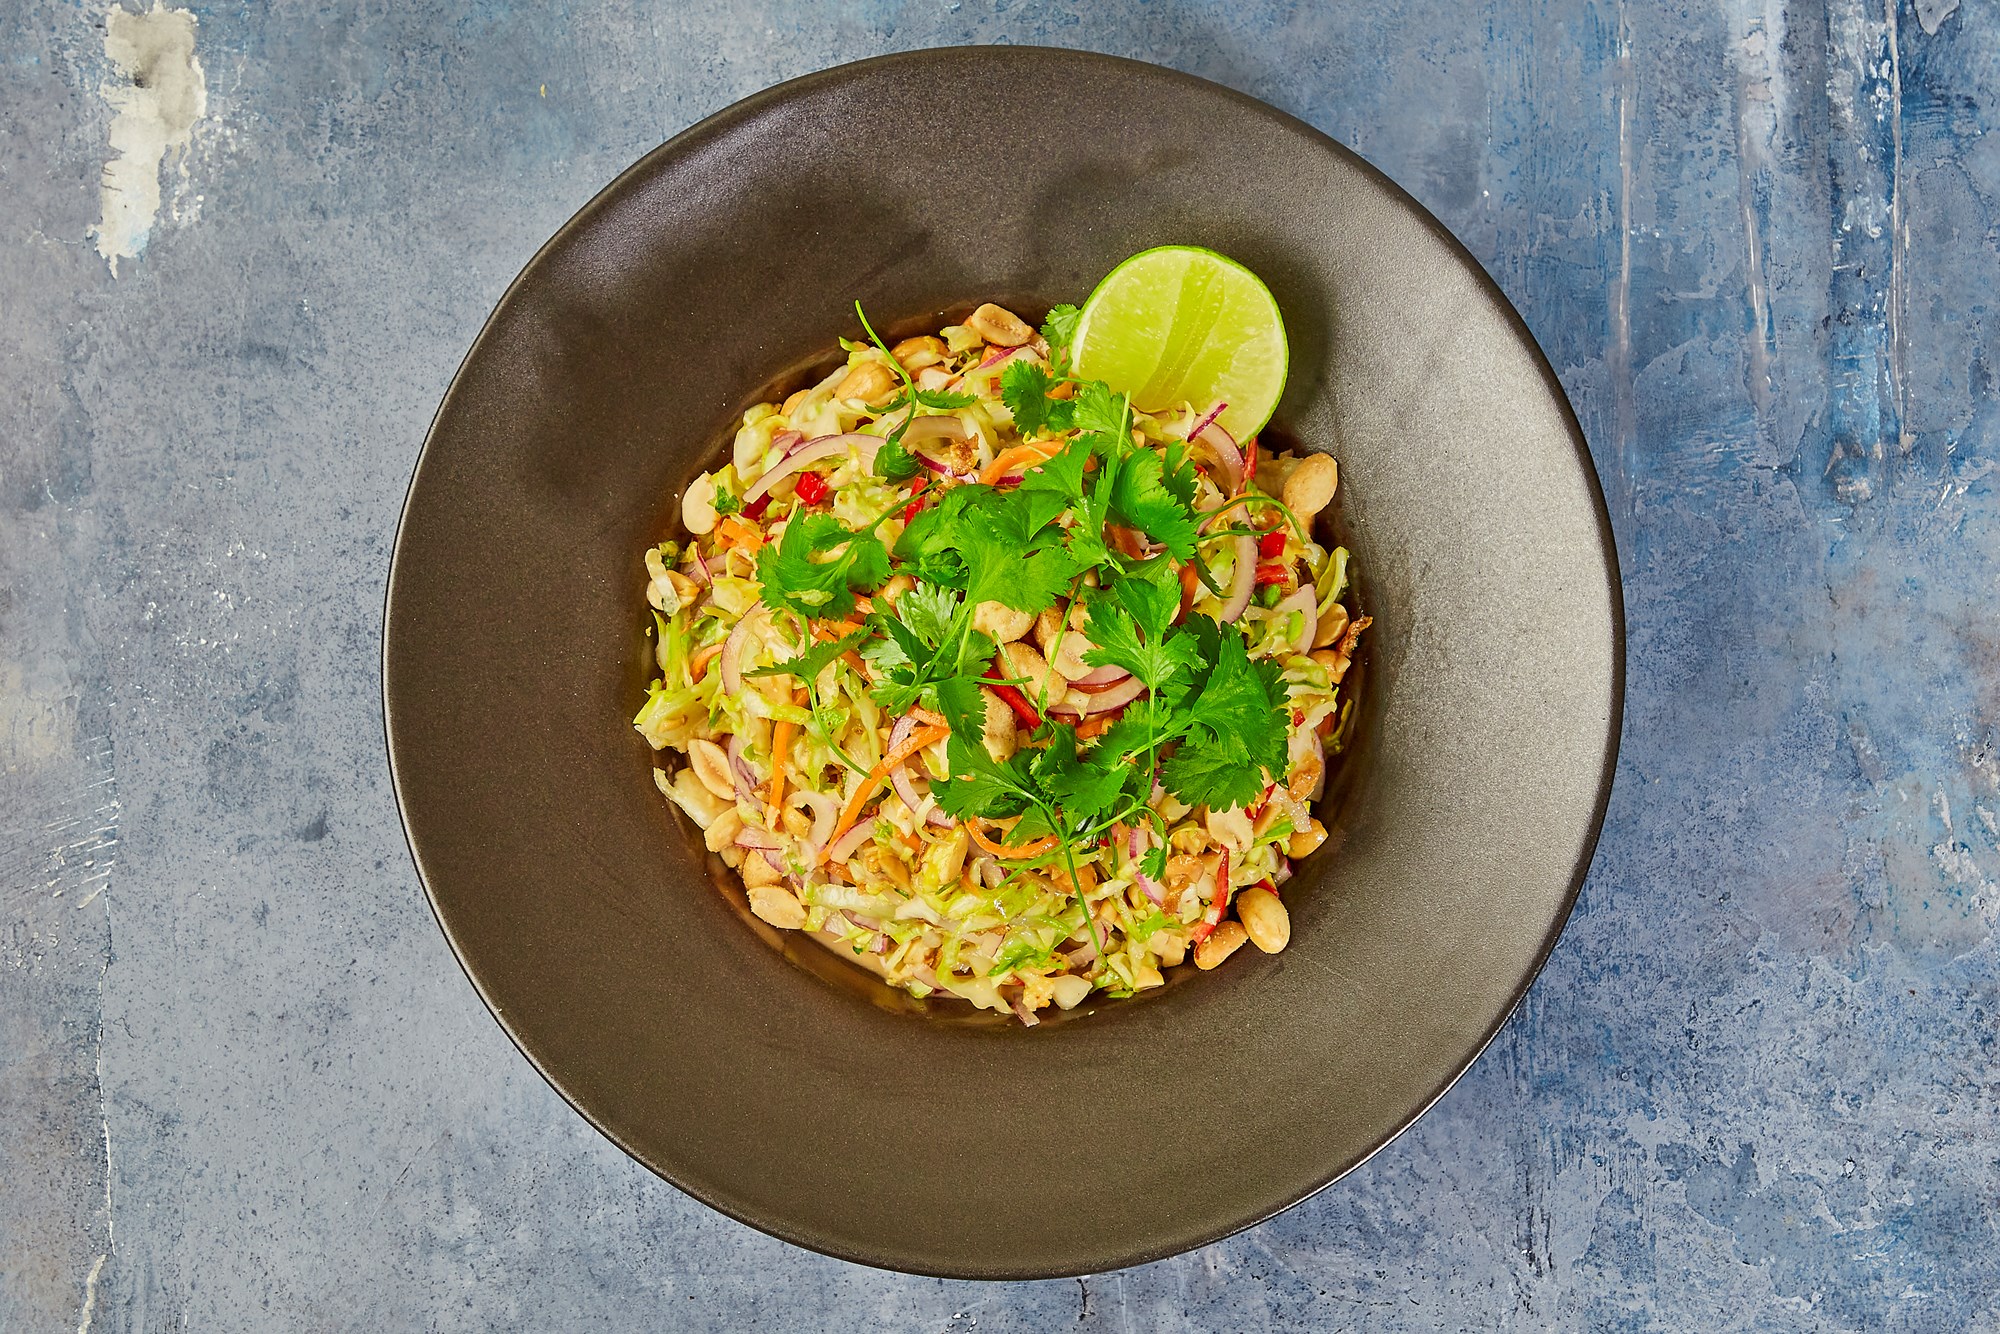 Ovnbagt lange med krydret vietnamesisk kålsalat i chili-peanut dressing